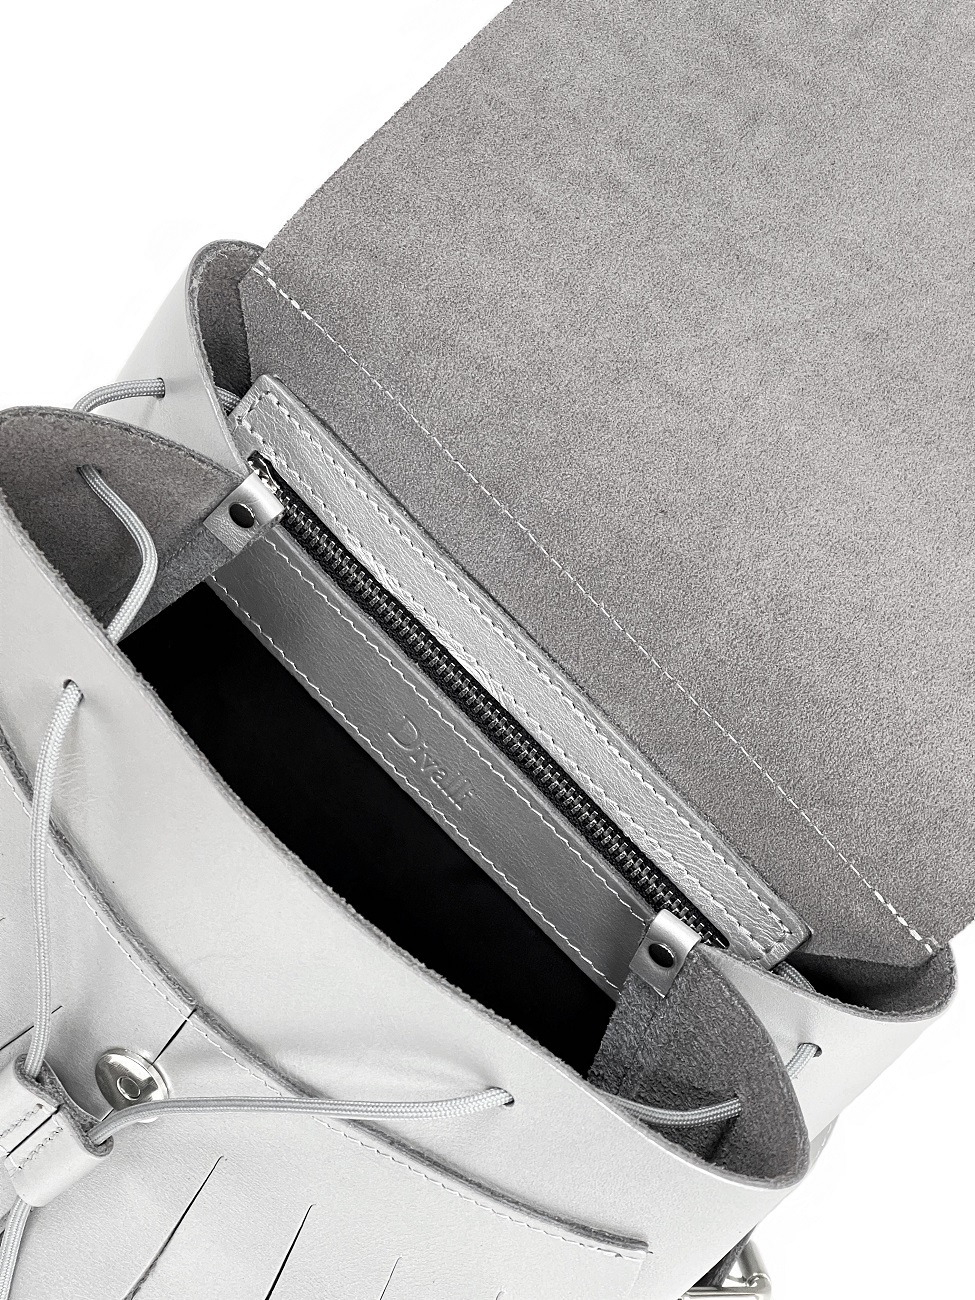 Кожаный рюкзак с крыльями серебристый B004 silver